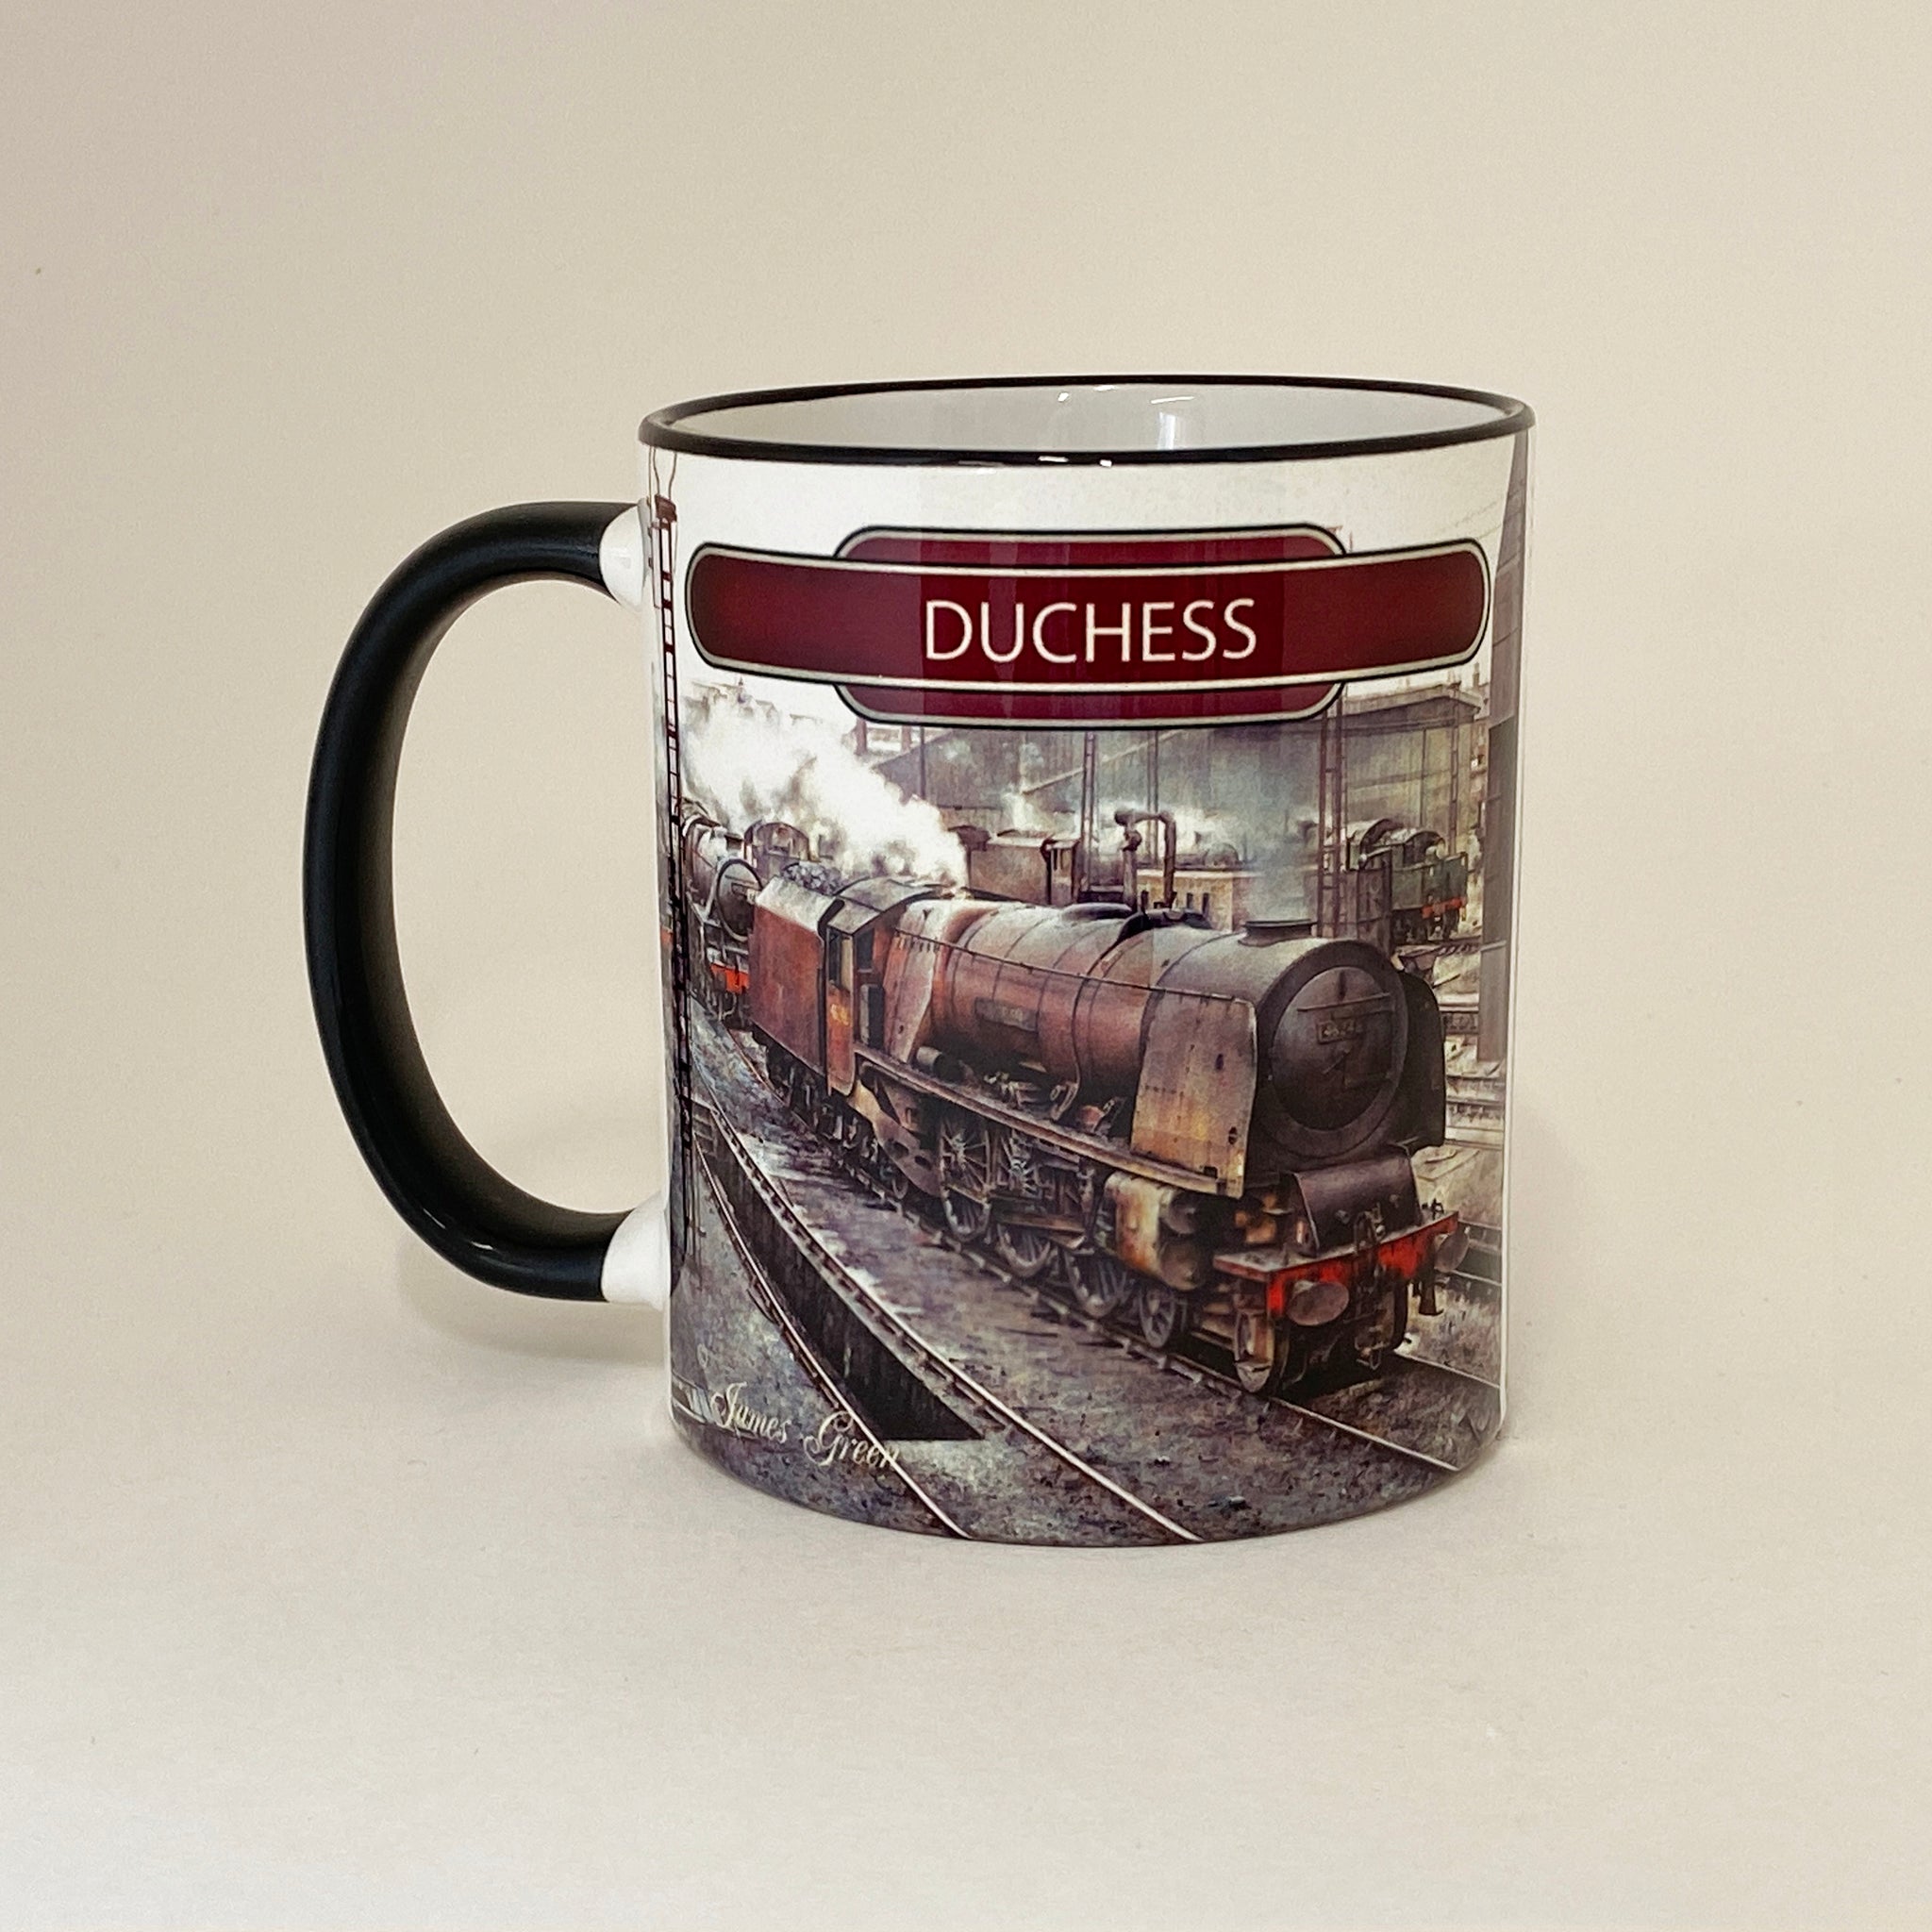 15% OFF RRP is £14.99  Duchess Mug